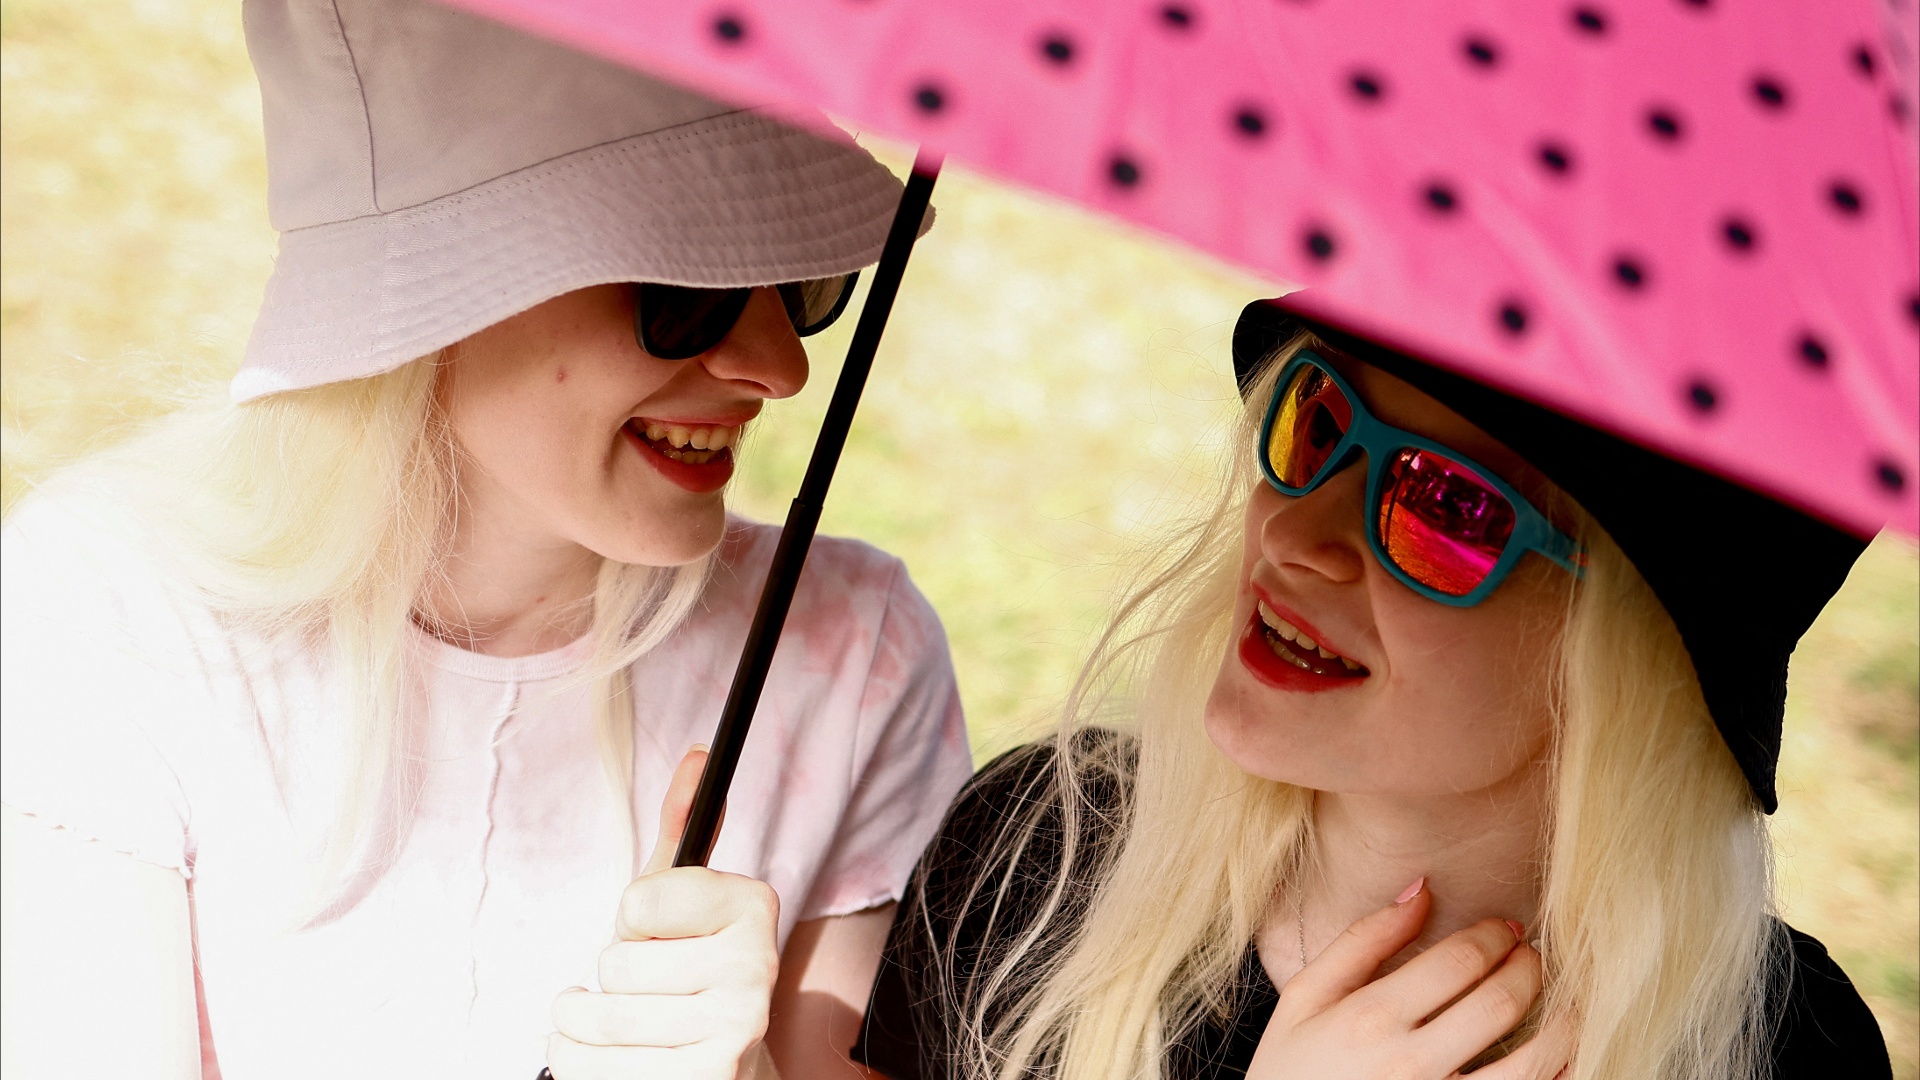 Как сёстры-альбиносы из Италии защищают свою кожу от палящих солнечных лучей